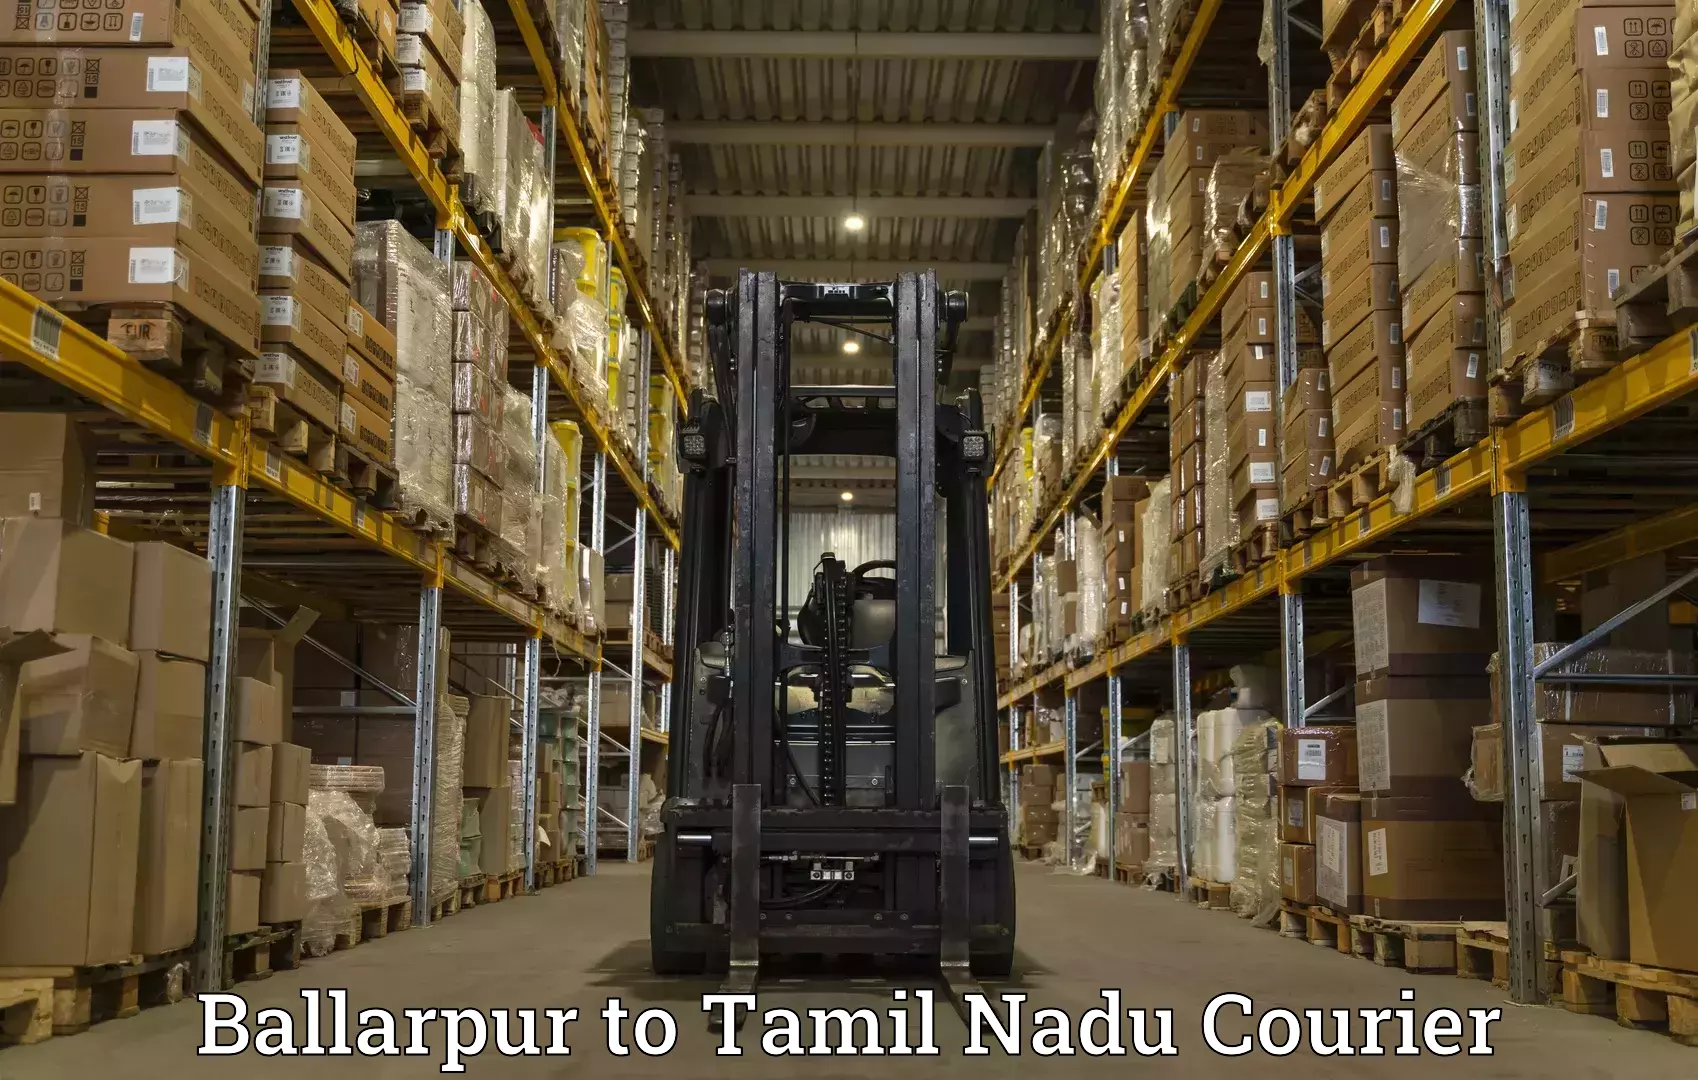 Express logistics providers Ballarpur to Tamil Nadu